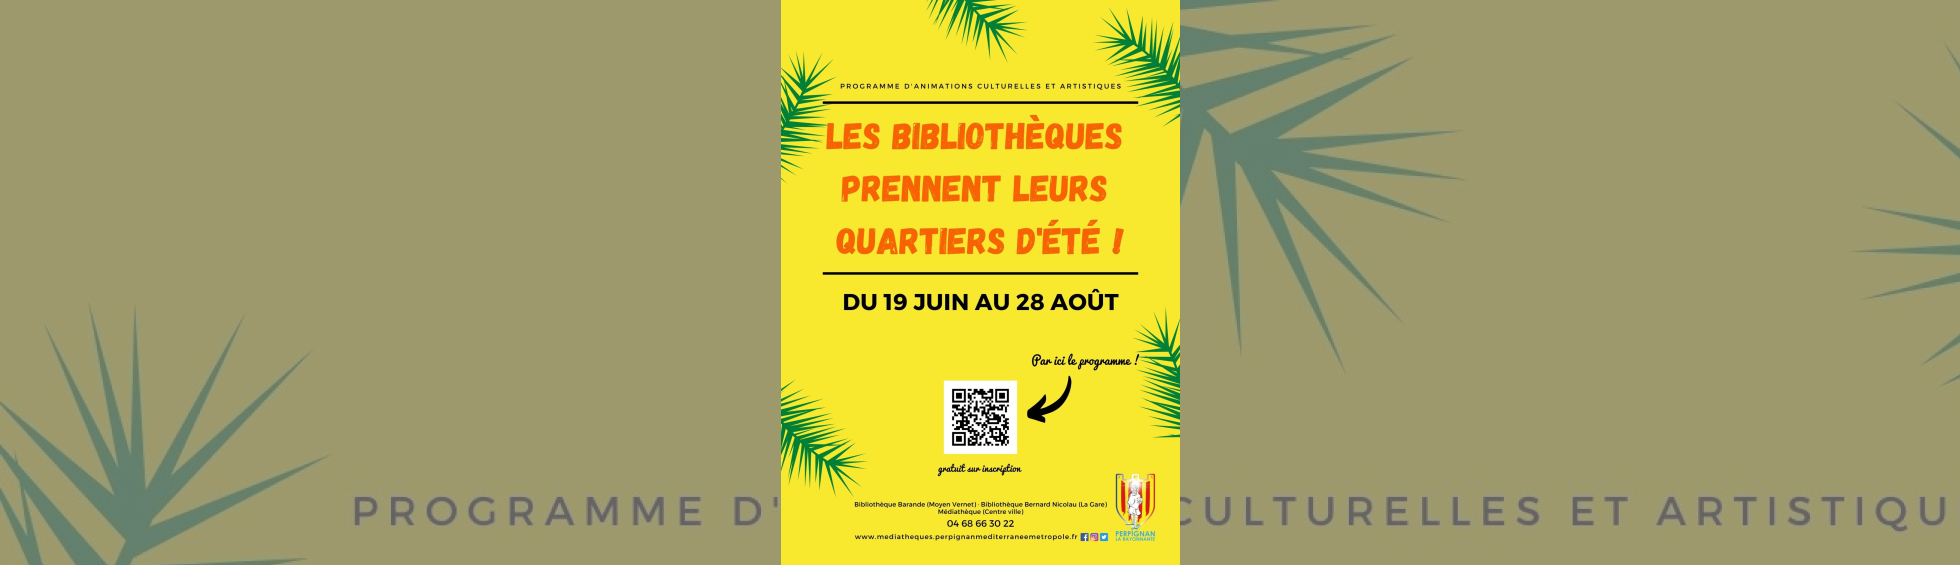 affiche du programme d'animations culturelles et artisiques des bibliothèques- affiche sur fond jaune avec renseignements diverses 